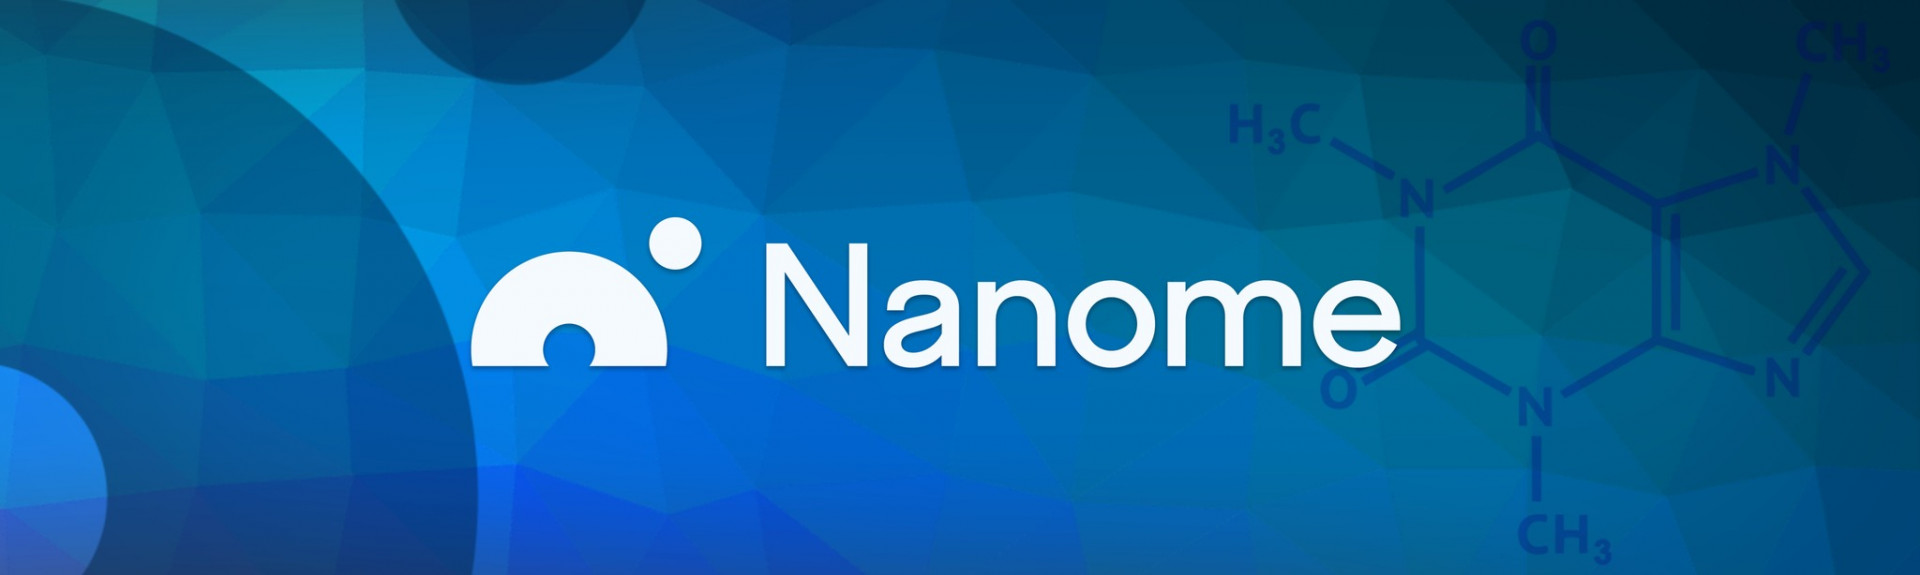 Nanome